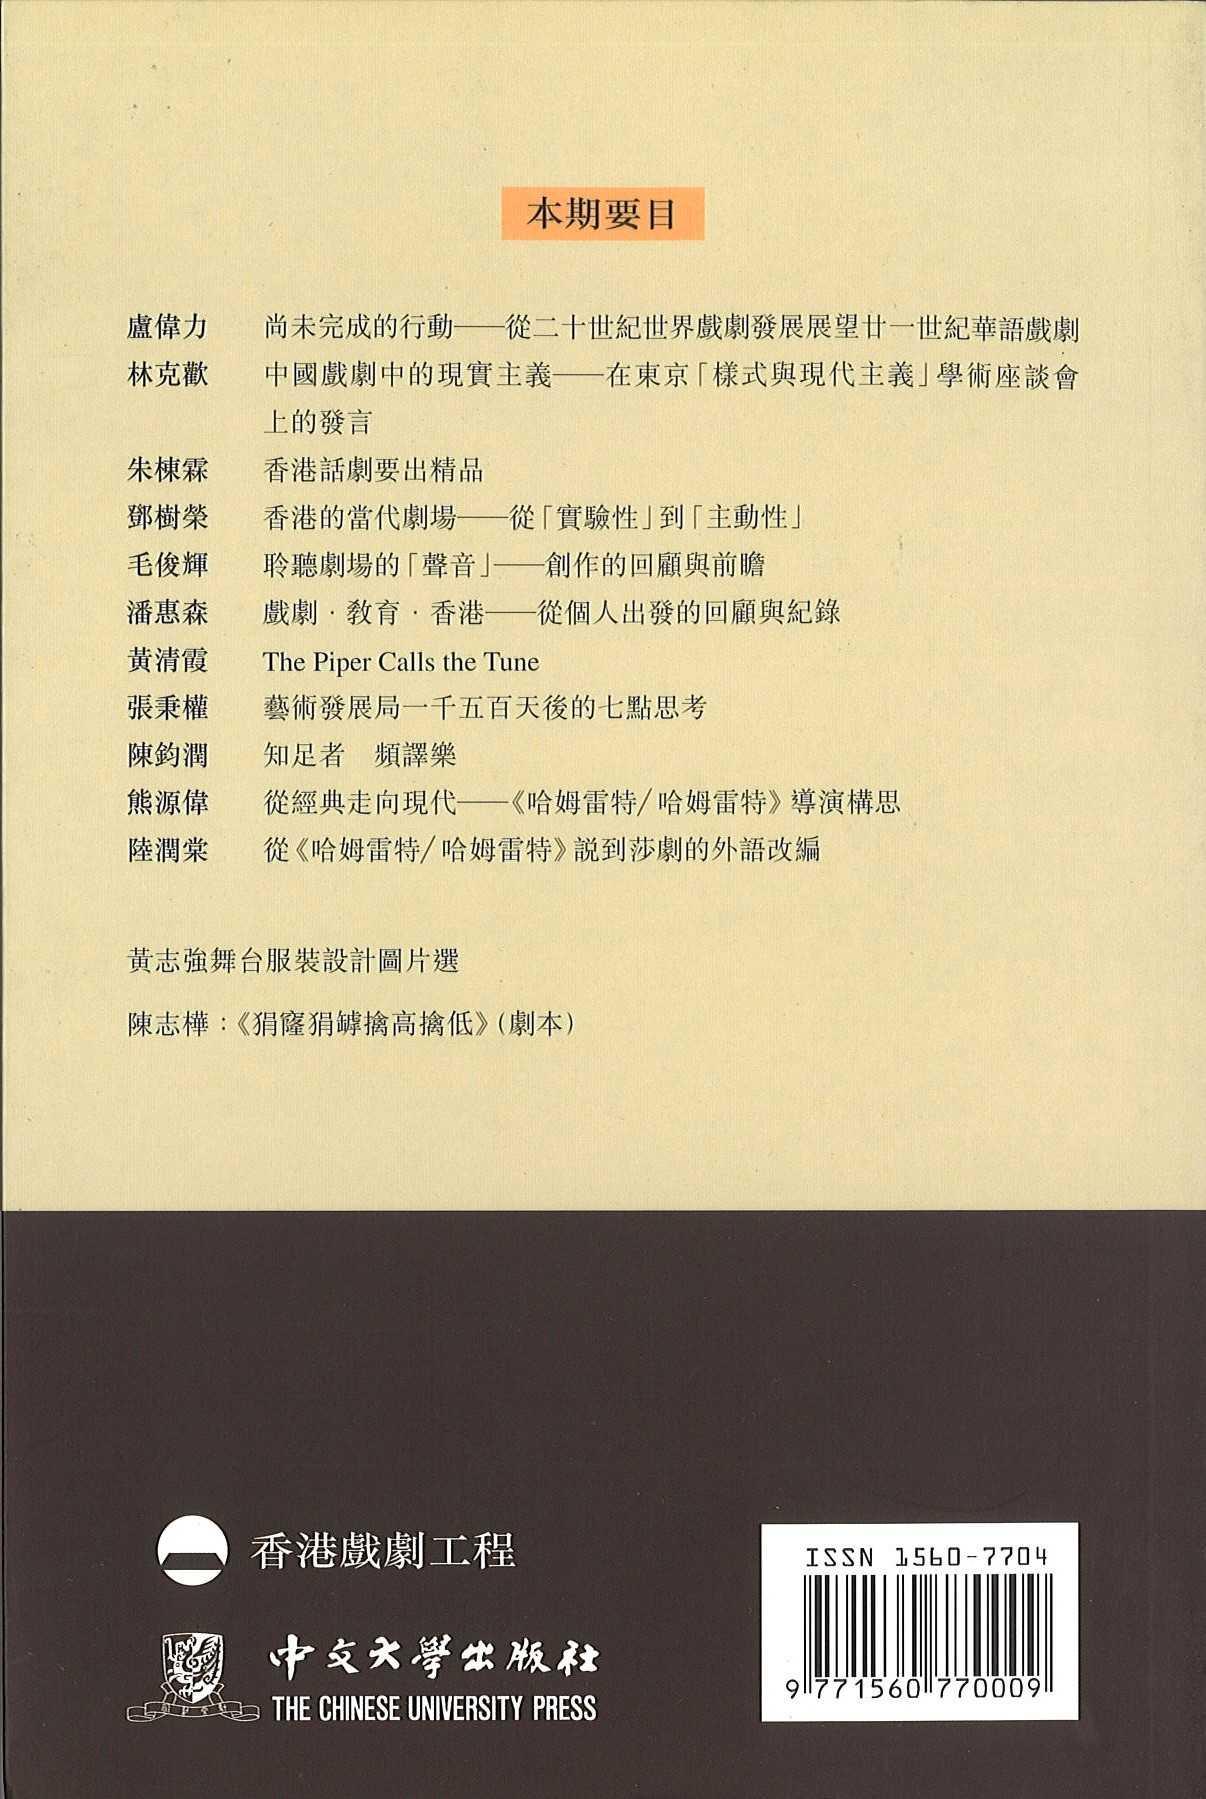 《香港戲劇學刊》第二期 — 蛻變中的香港戲劇